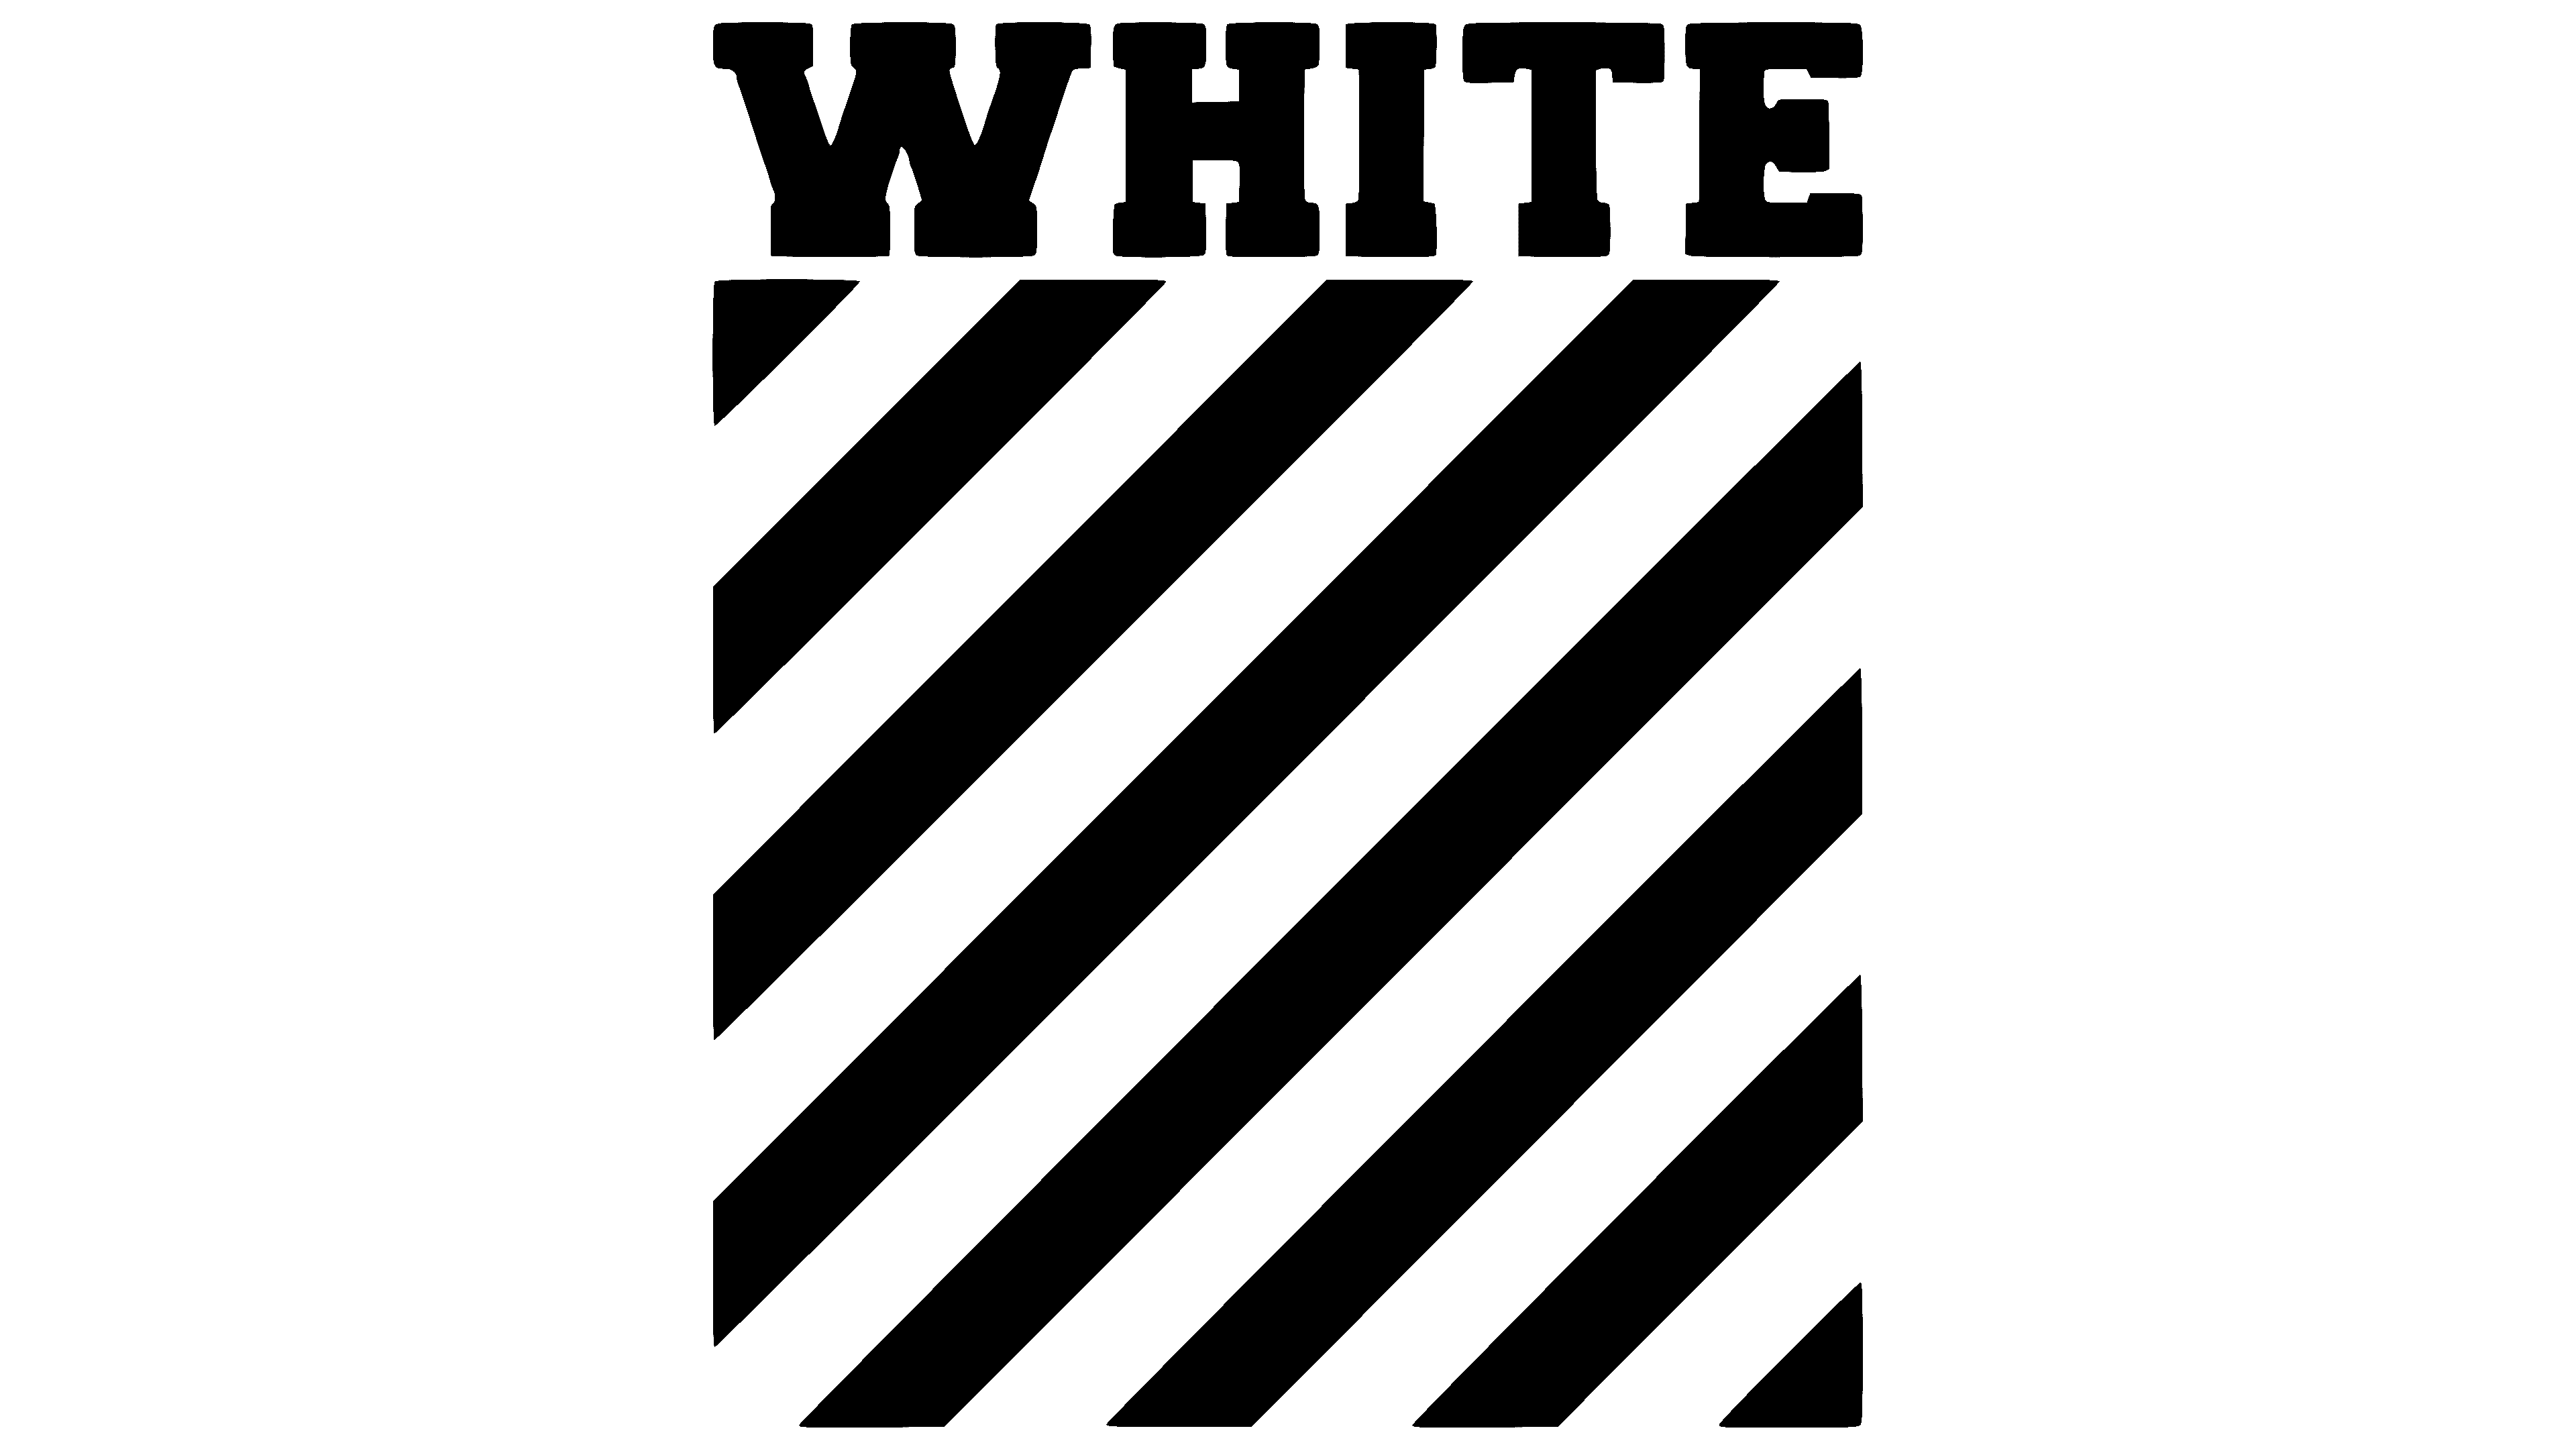 Off-White Logo  Off-white logo, ? logo, Off white